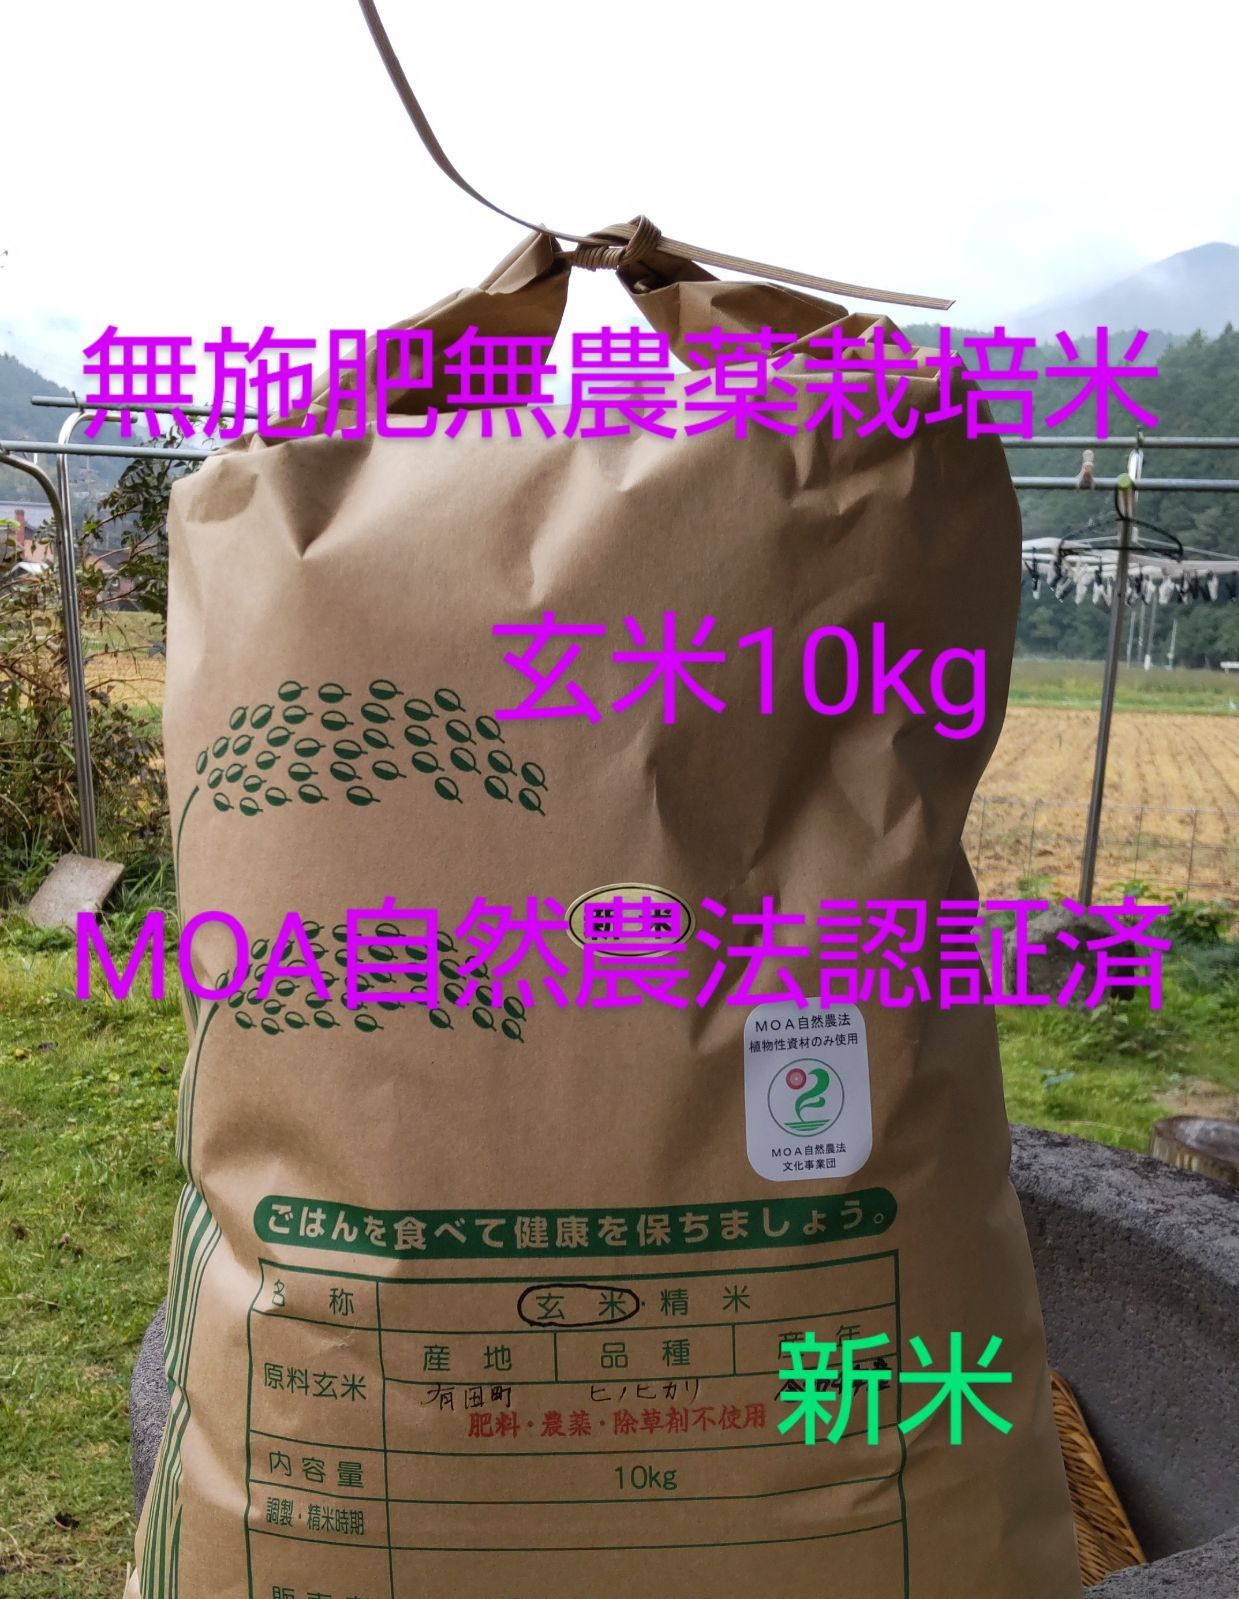 新米・MOA自然農法認証済・無施肥無農薬栽培米・玄米20kg・精米可教えて頂けたらと思います